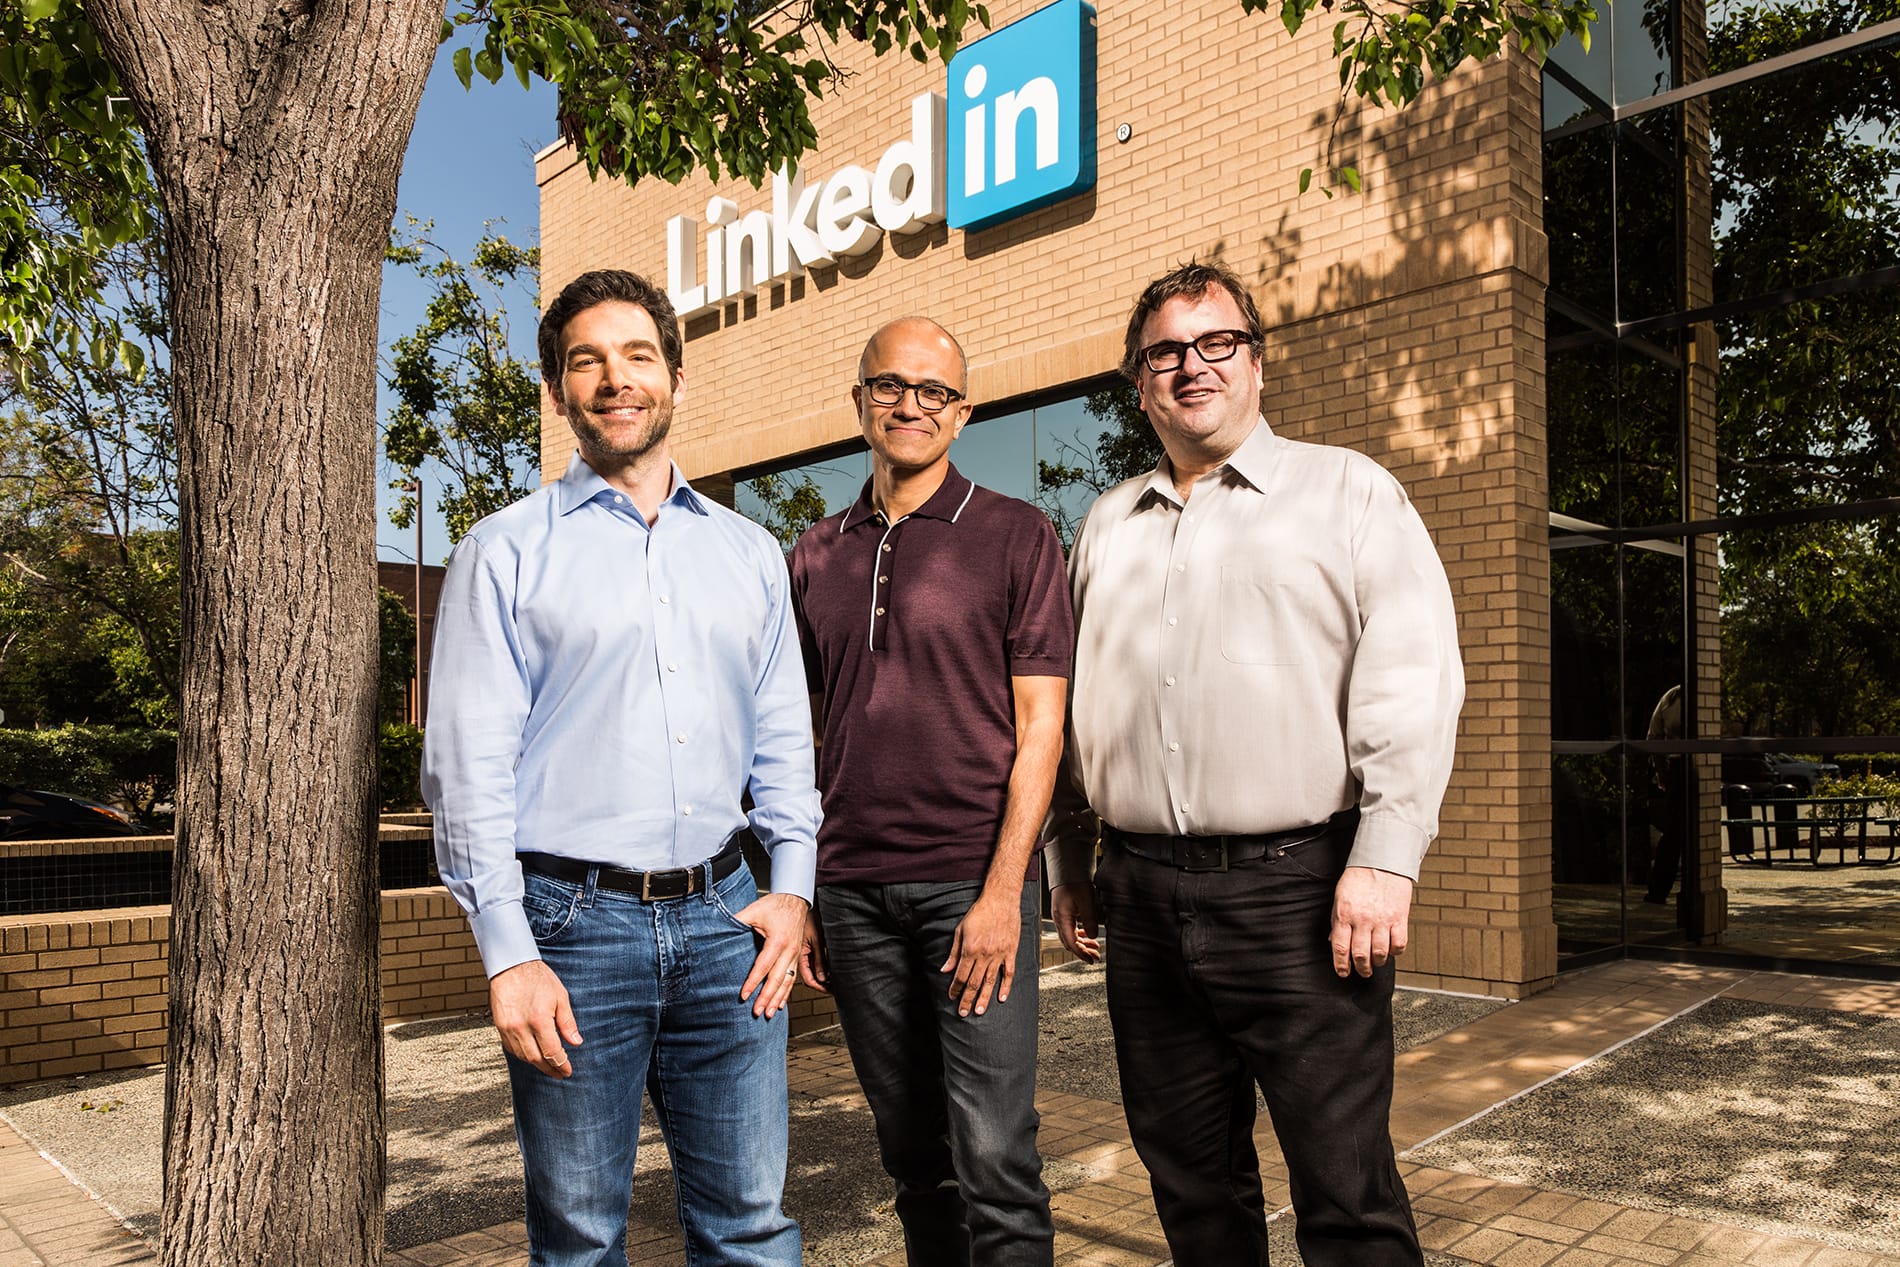 Microsoft to acquire LinkedIn